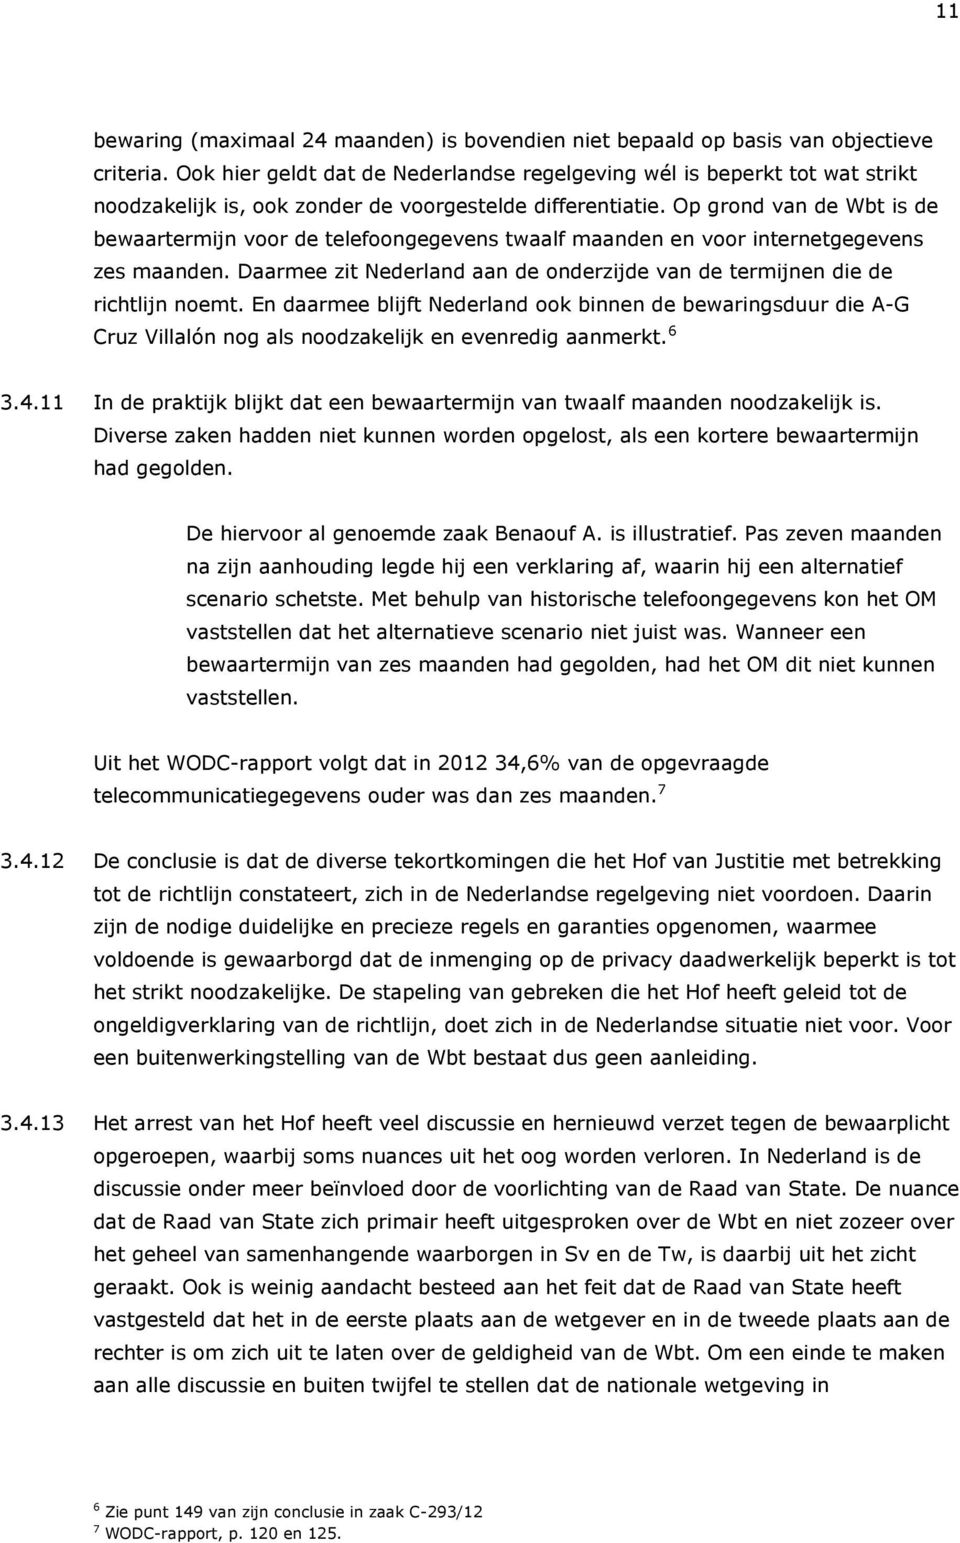 Op grond van de Wbt is de bewaartermijn voor de telefoongegevens twaalf maanden en voor internetgegevens zes maanden. Daarmee zit Nederland aan de onderzijde van de termijnen die de richtlijn noemt.